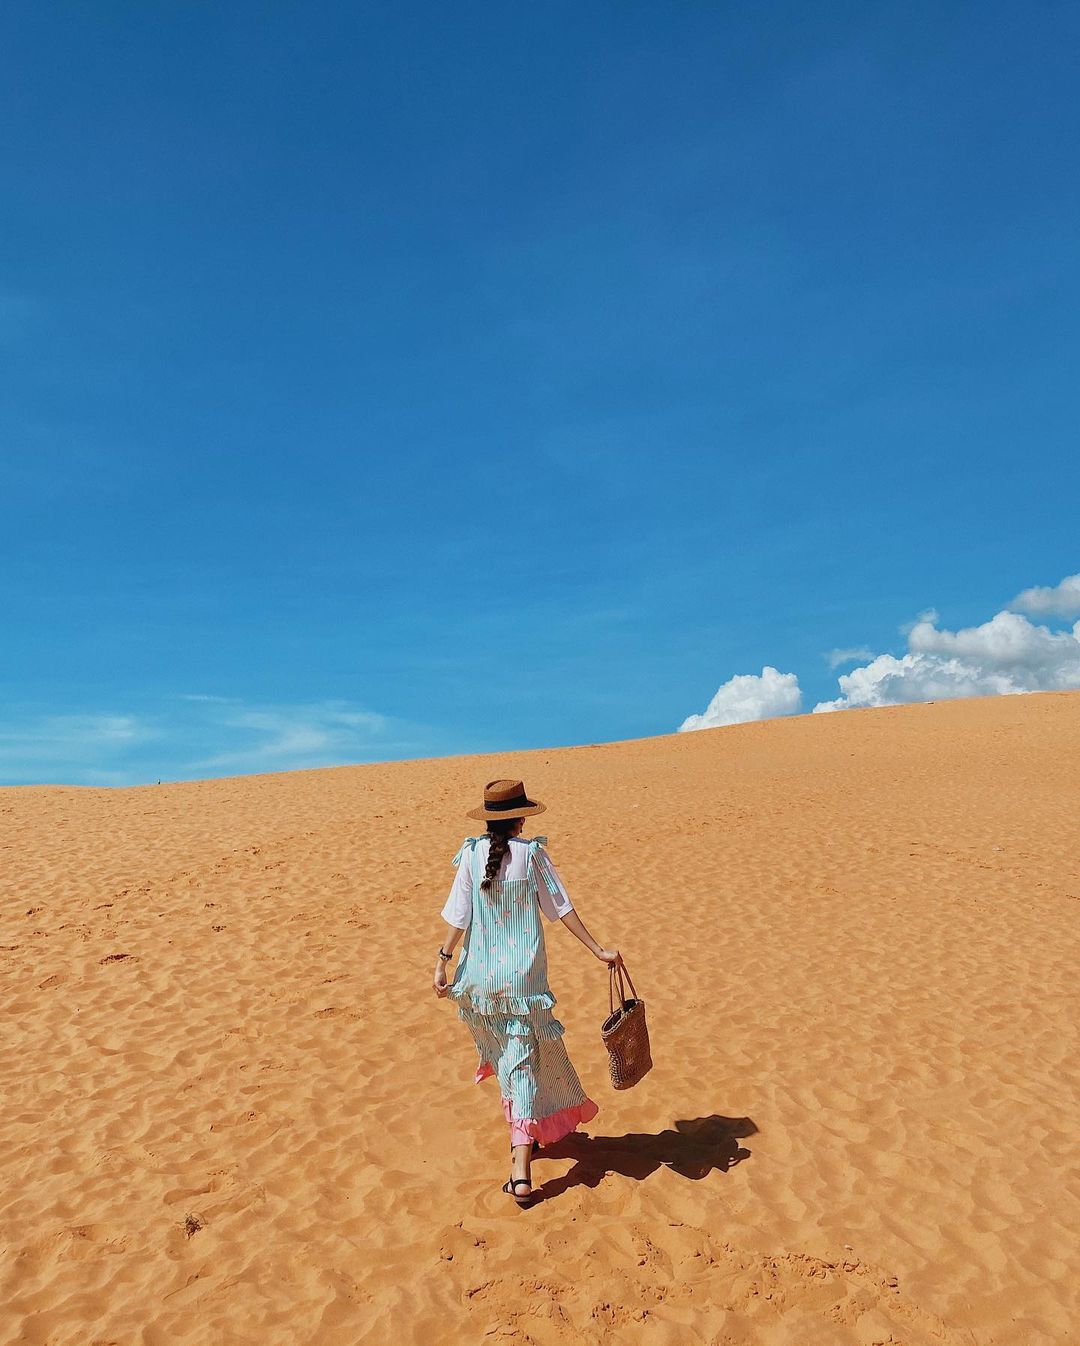 Đồi cát là điểm du lịch Phan Thiết được nhiều du khách yêu thích. Ảnh: @sakura_mint18.